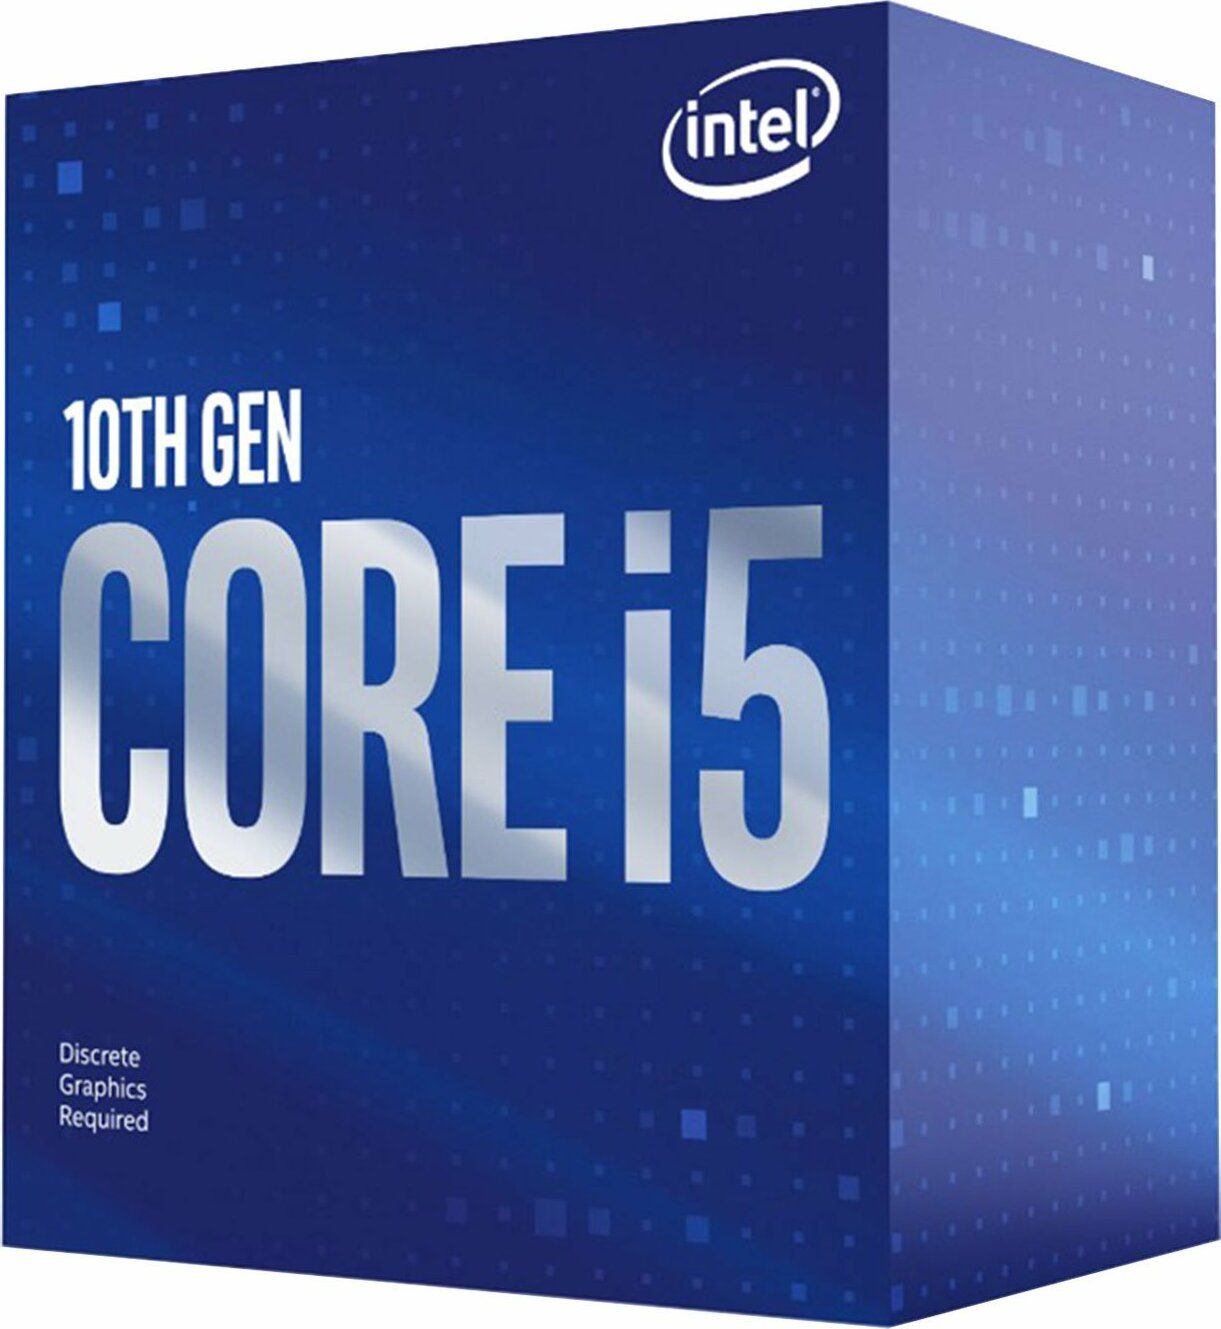 Procesor Intel® Core™ i5-10400F Comet Lake, 2.9GHz, 12MB, fara grafica integrata, Socket 1200